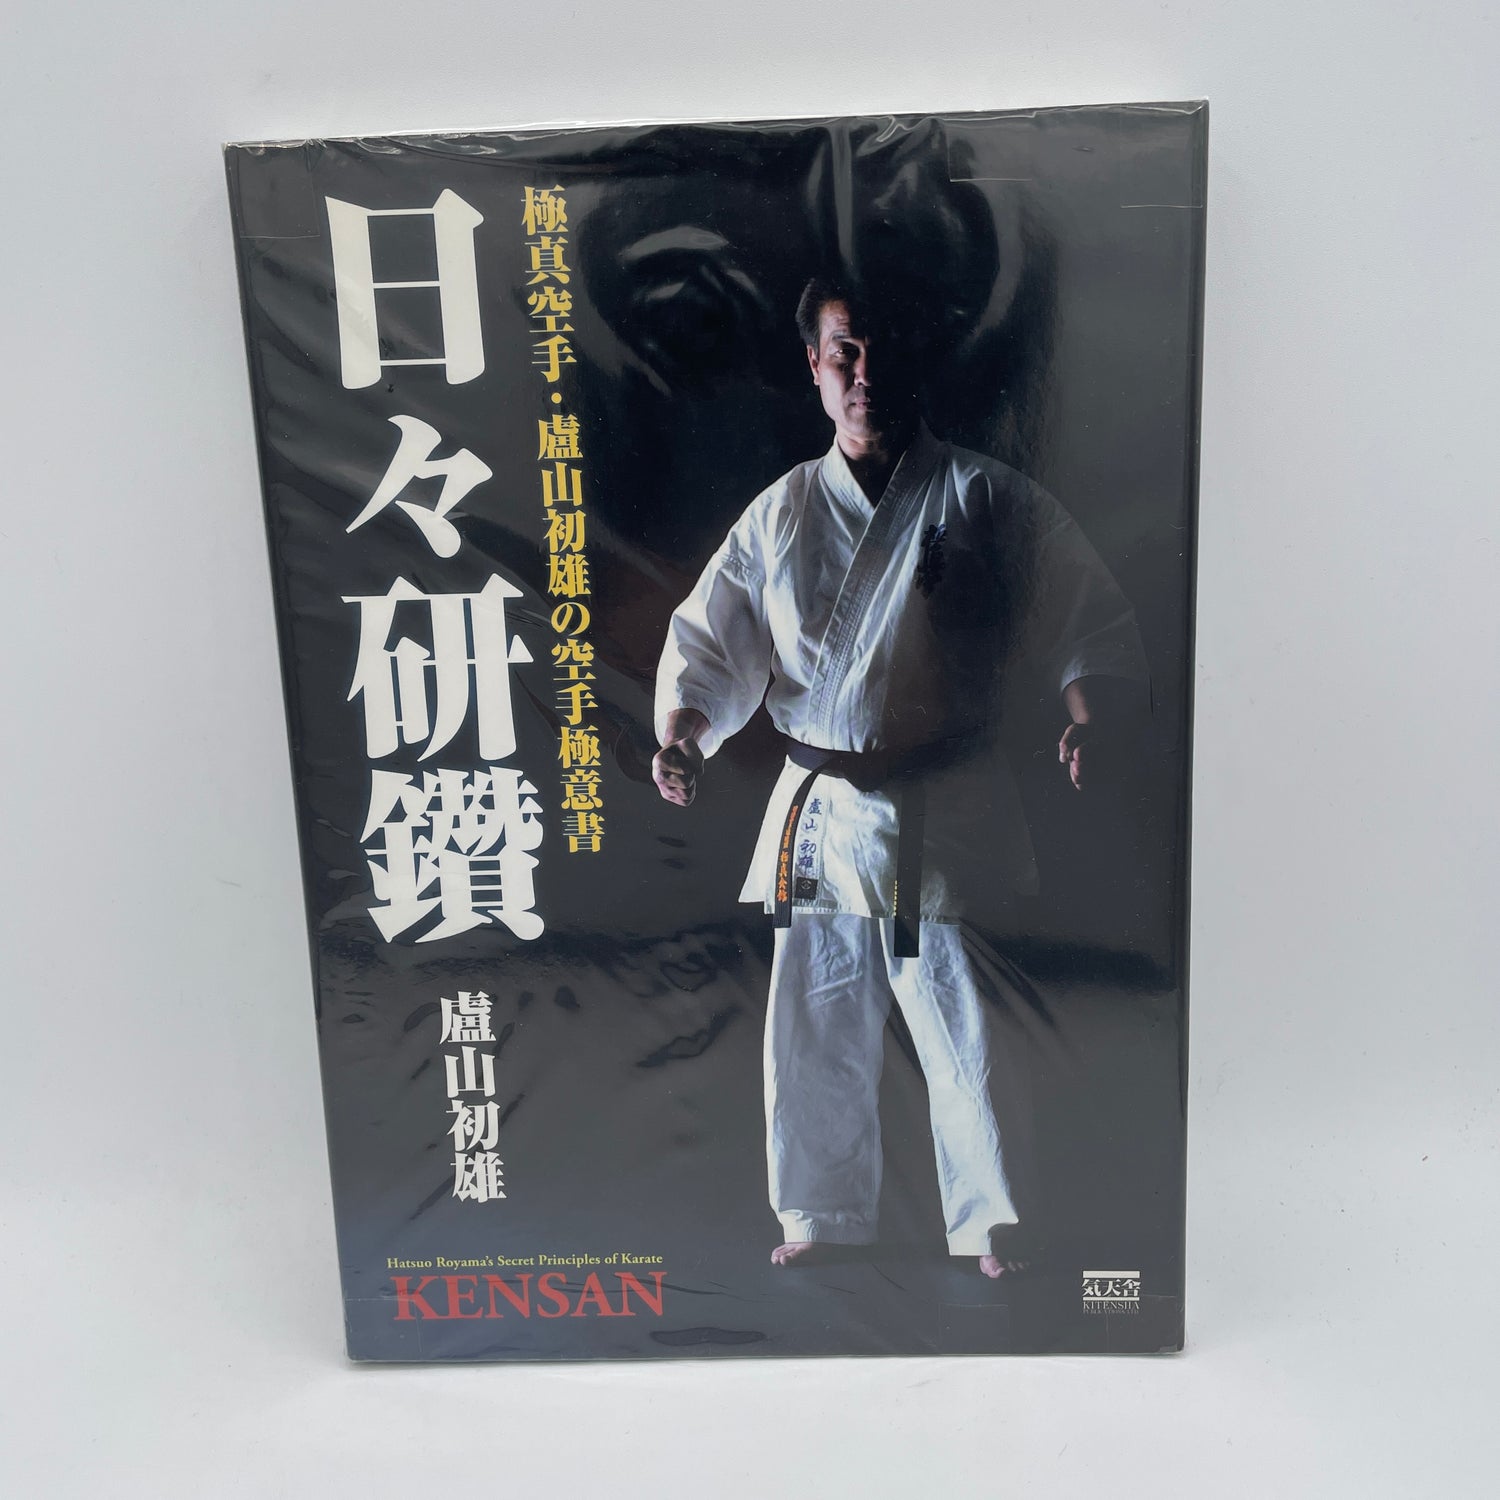 Libro de los principios secretos del karate de Kensan de Hatsuo Royama (usado) 